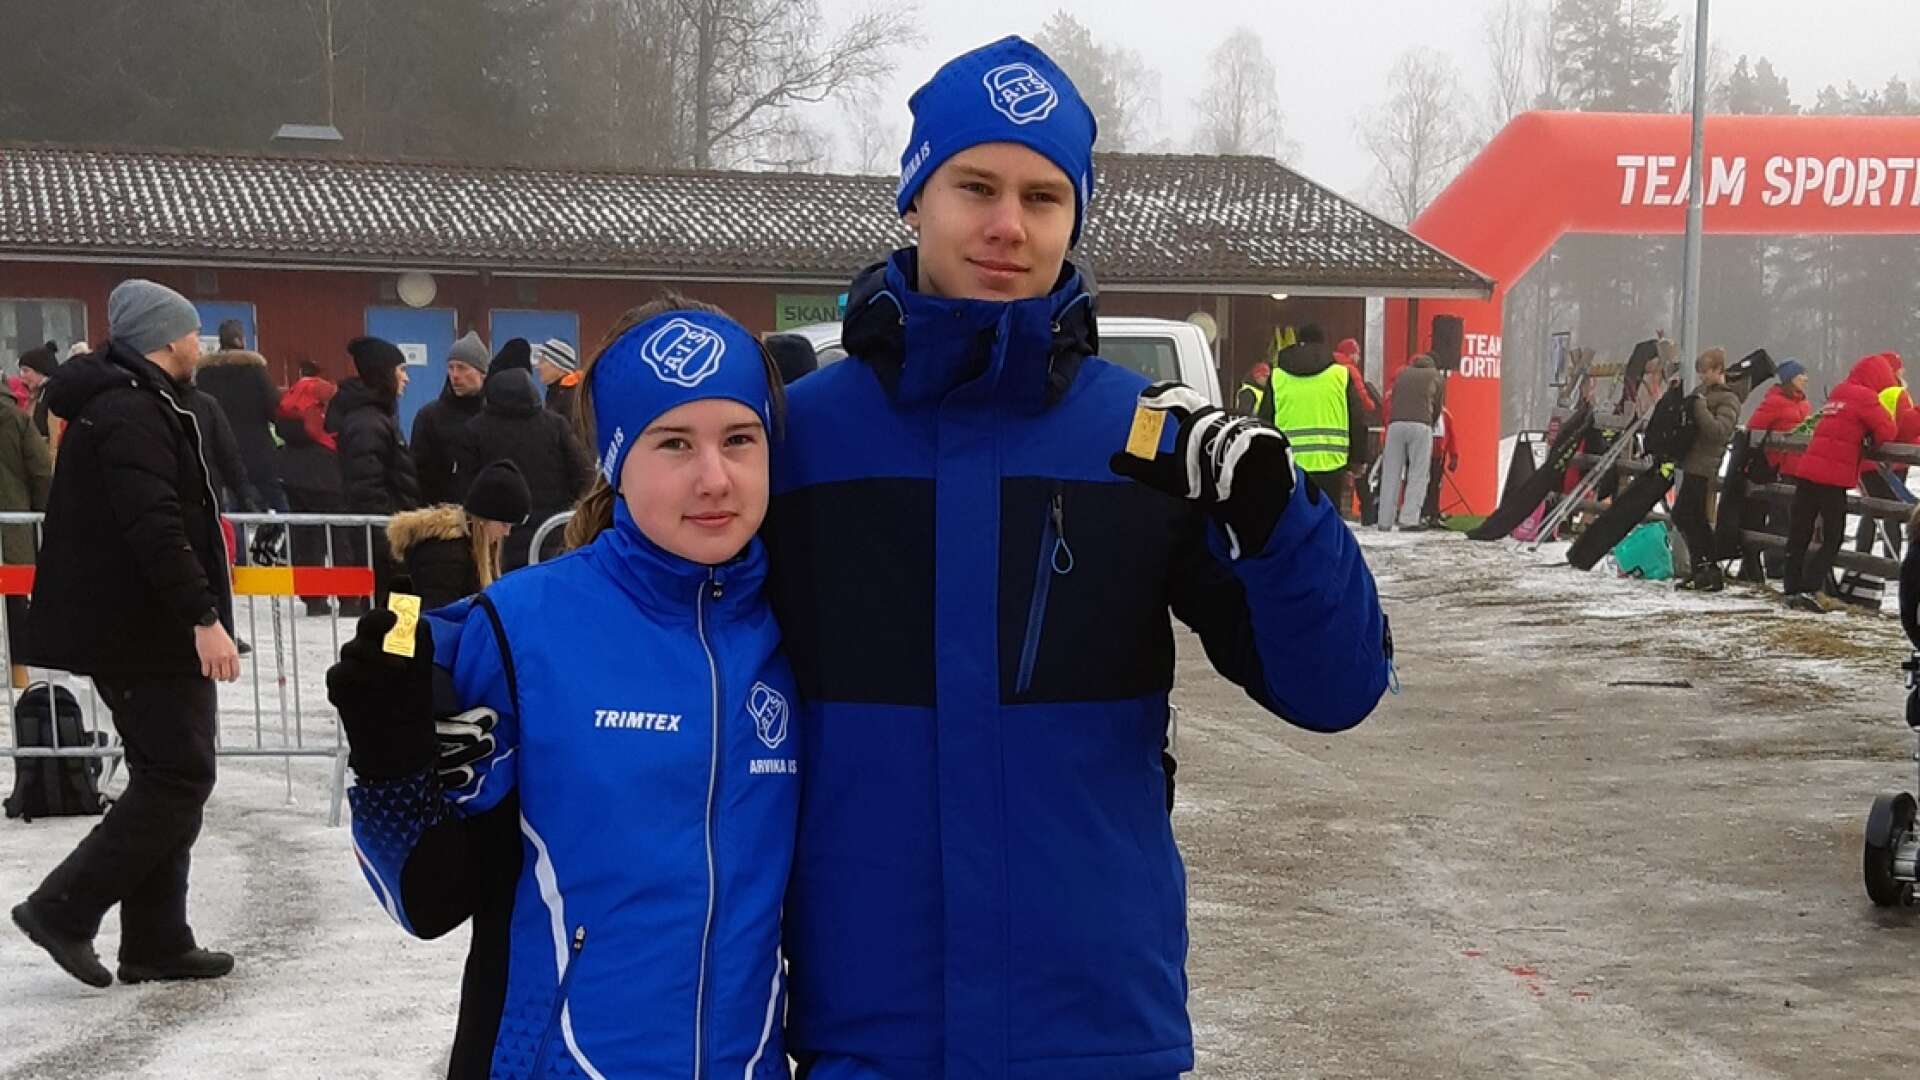 Syskon och distriktsmästare. Stina och Petter Karlsson säkrade varsitt DM-guld i helgen. 